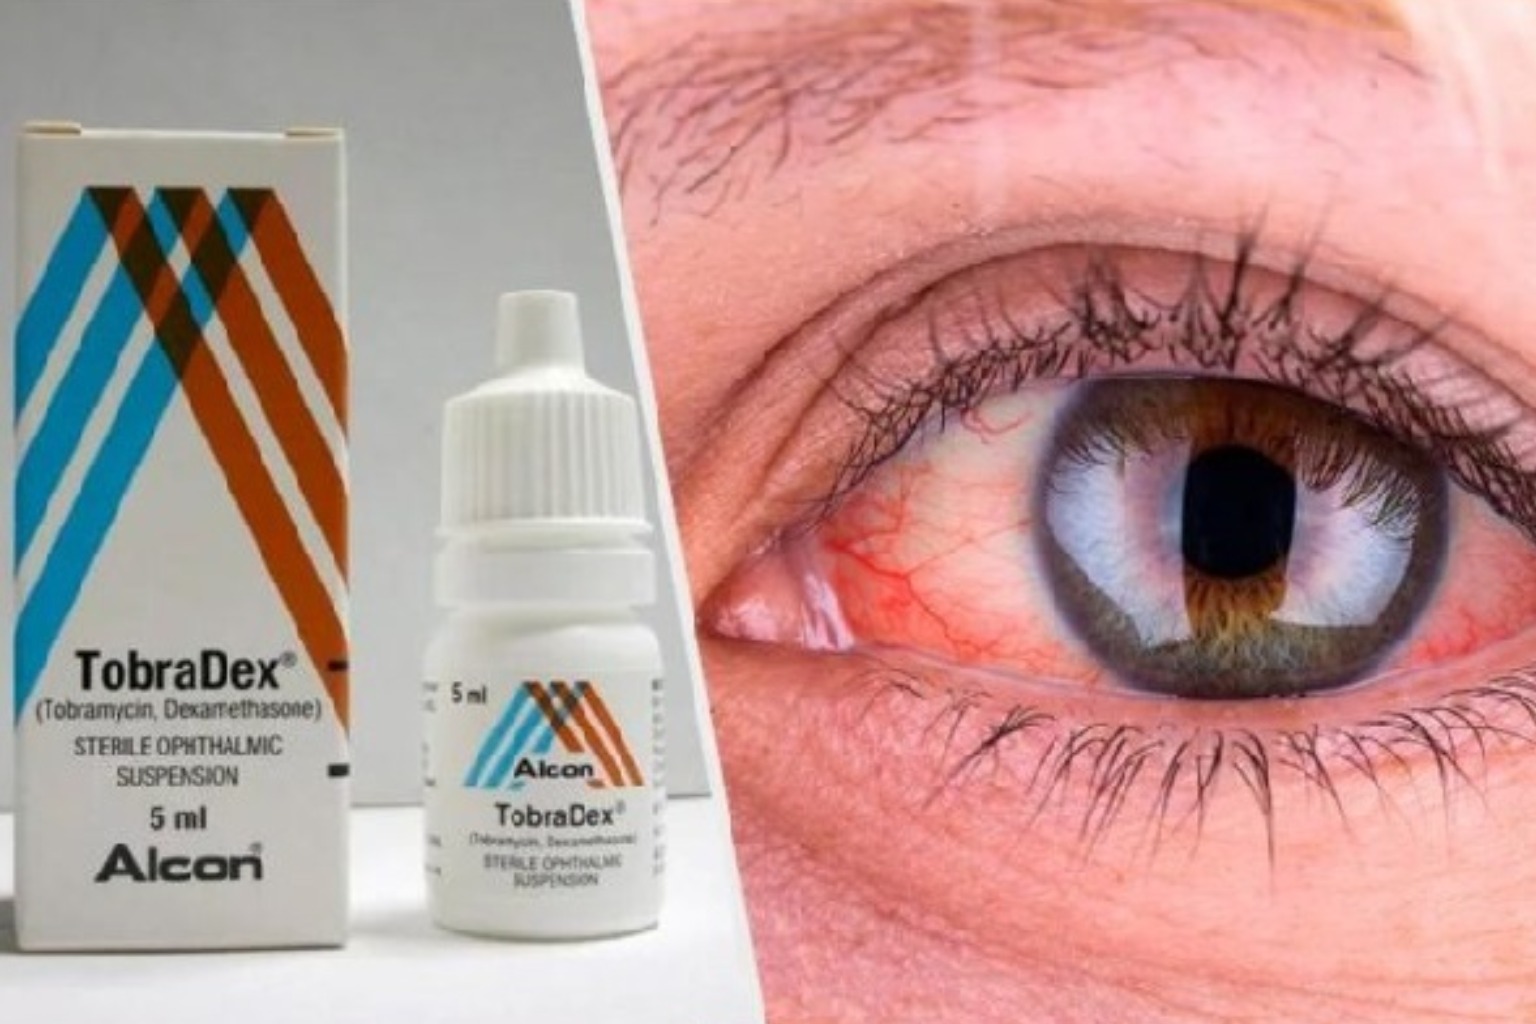 قطرة العين tobradex توبراديكس دواعي الاستعمال الأعراض الجانبية السعر